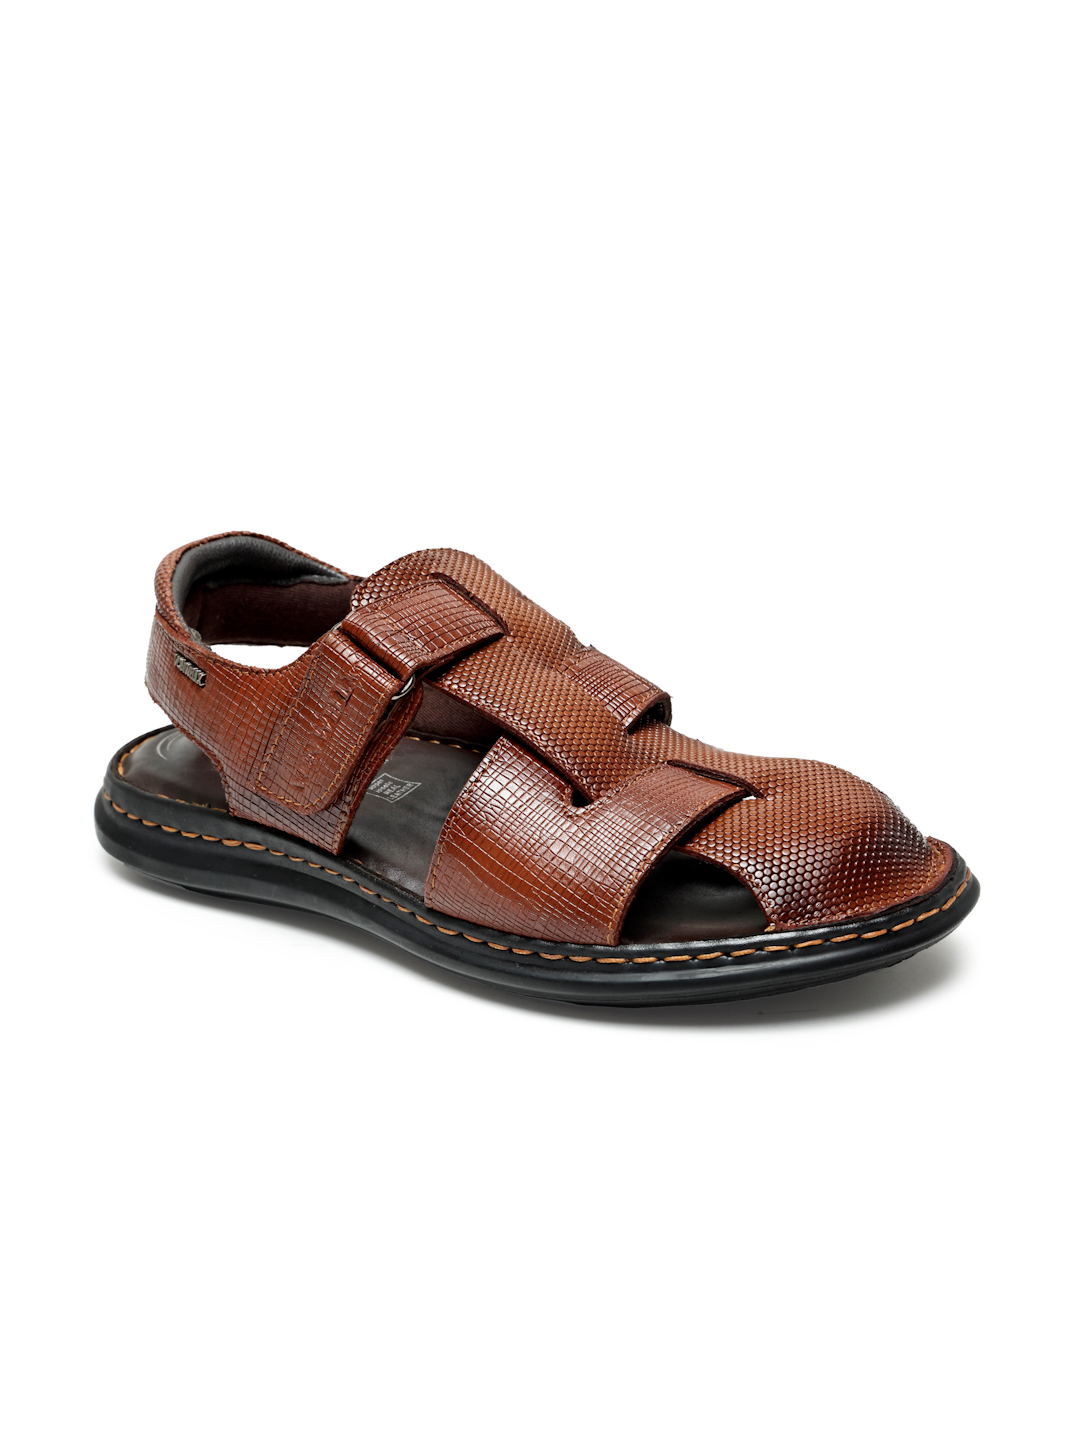 Buy Von Wellx Germany Comfort Men's Tan Sandals Morgen Online in Rajkot